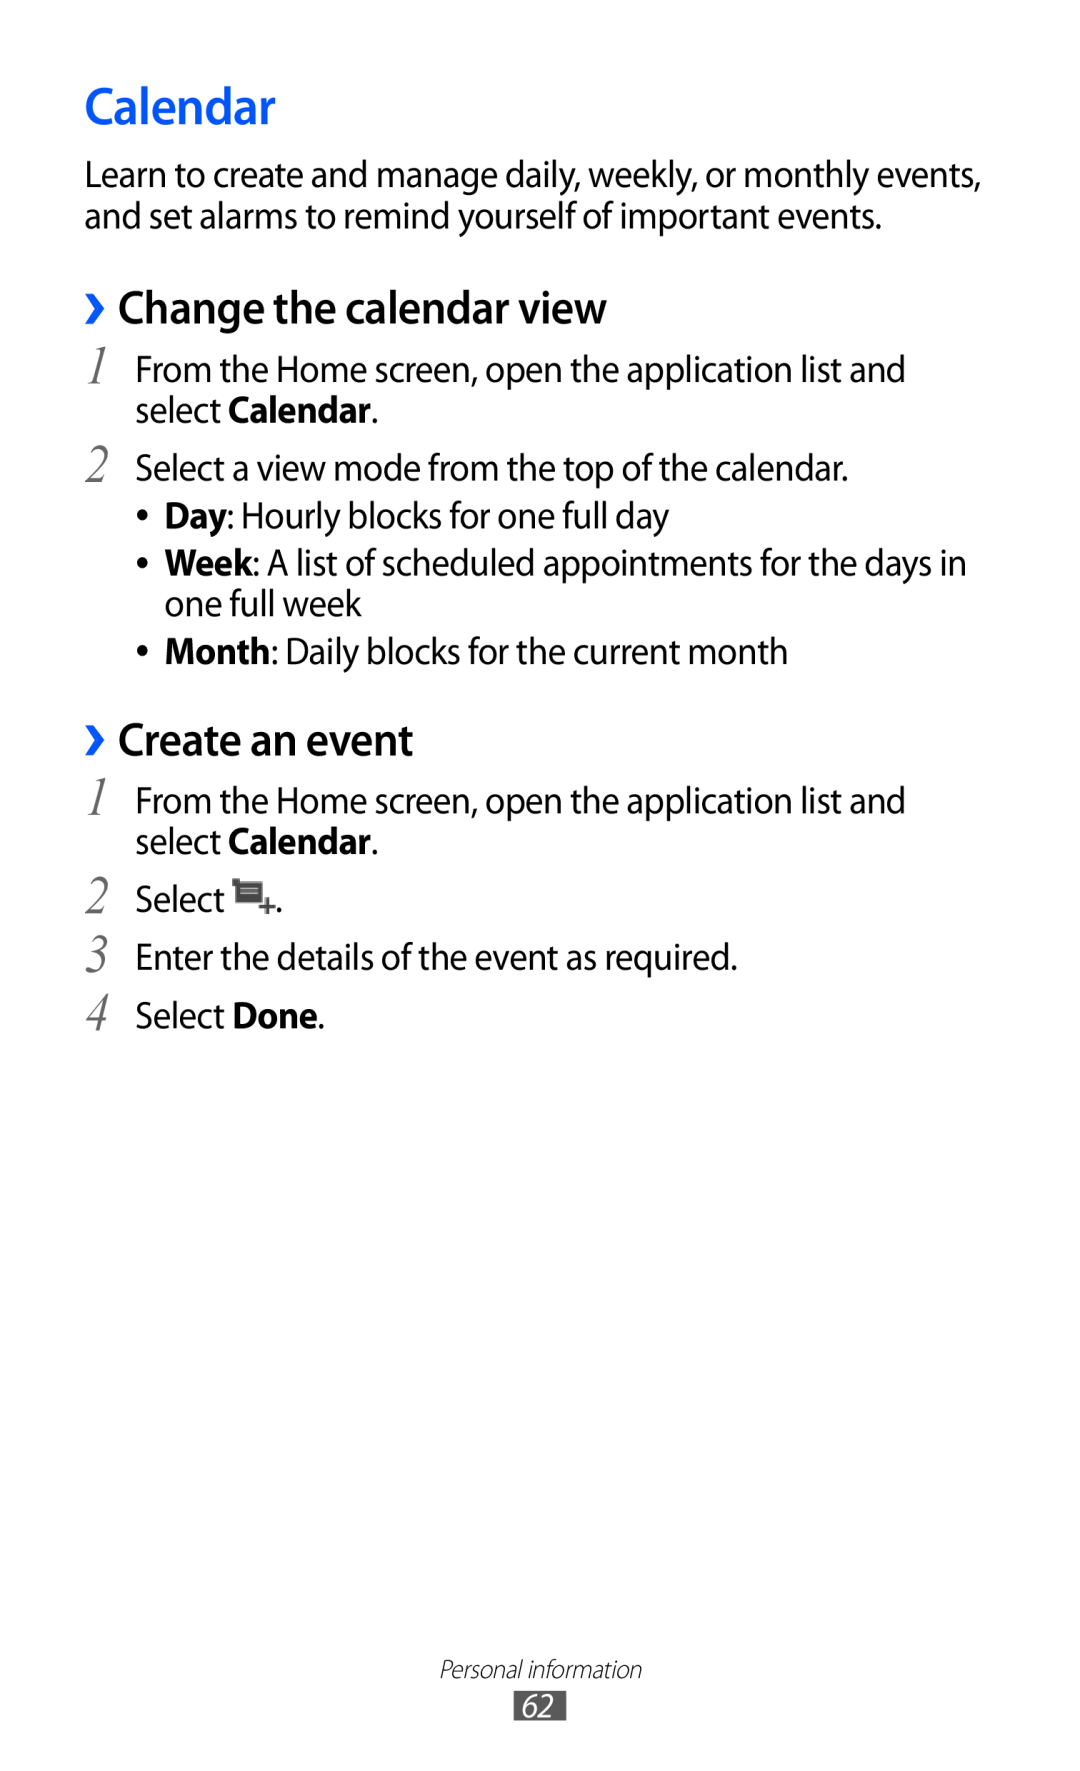 Samsung GT-P7510 user manual Calendar, ››Change the calendar view, ››Create an event 